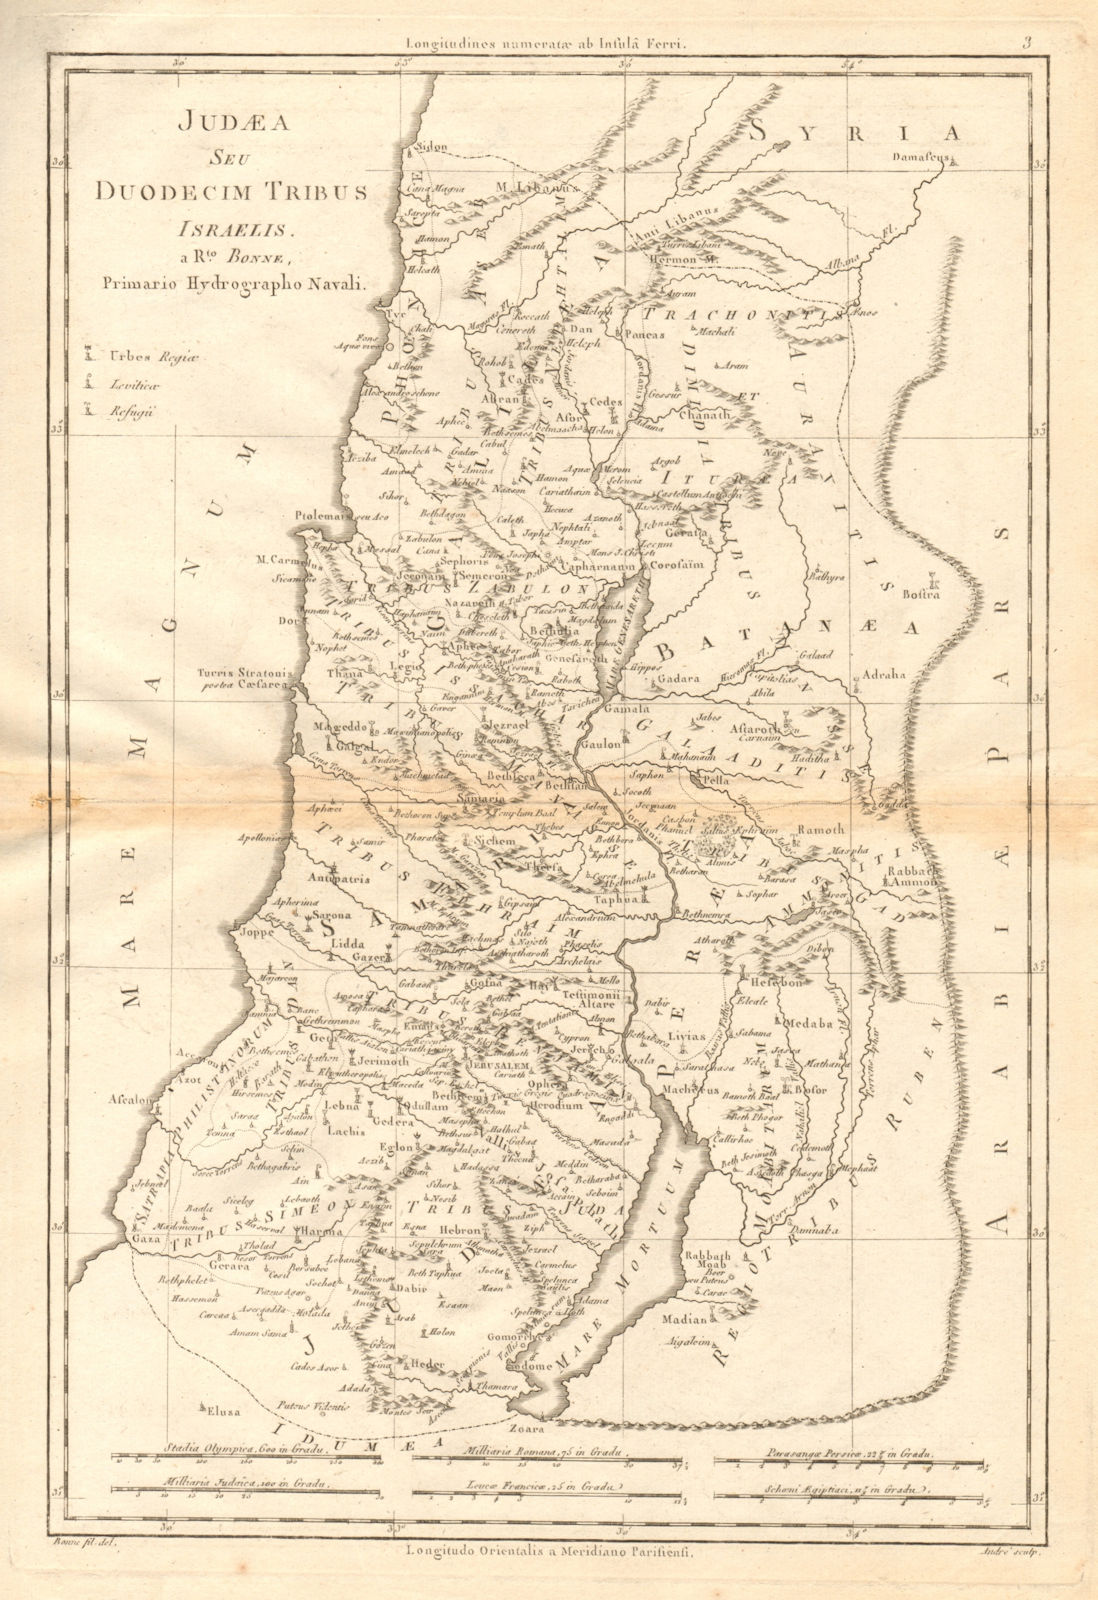 Judaea Seu Duodecim Tribus Israelis. Judea. 12 Tribes of Israel. BONNE 1787 map